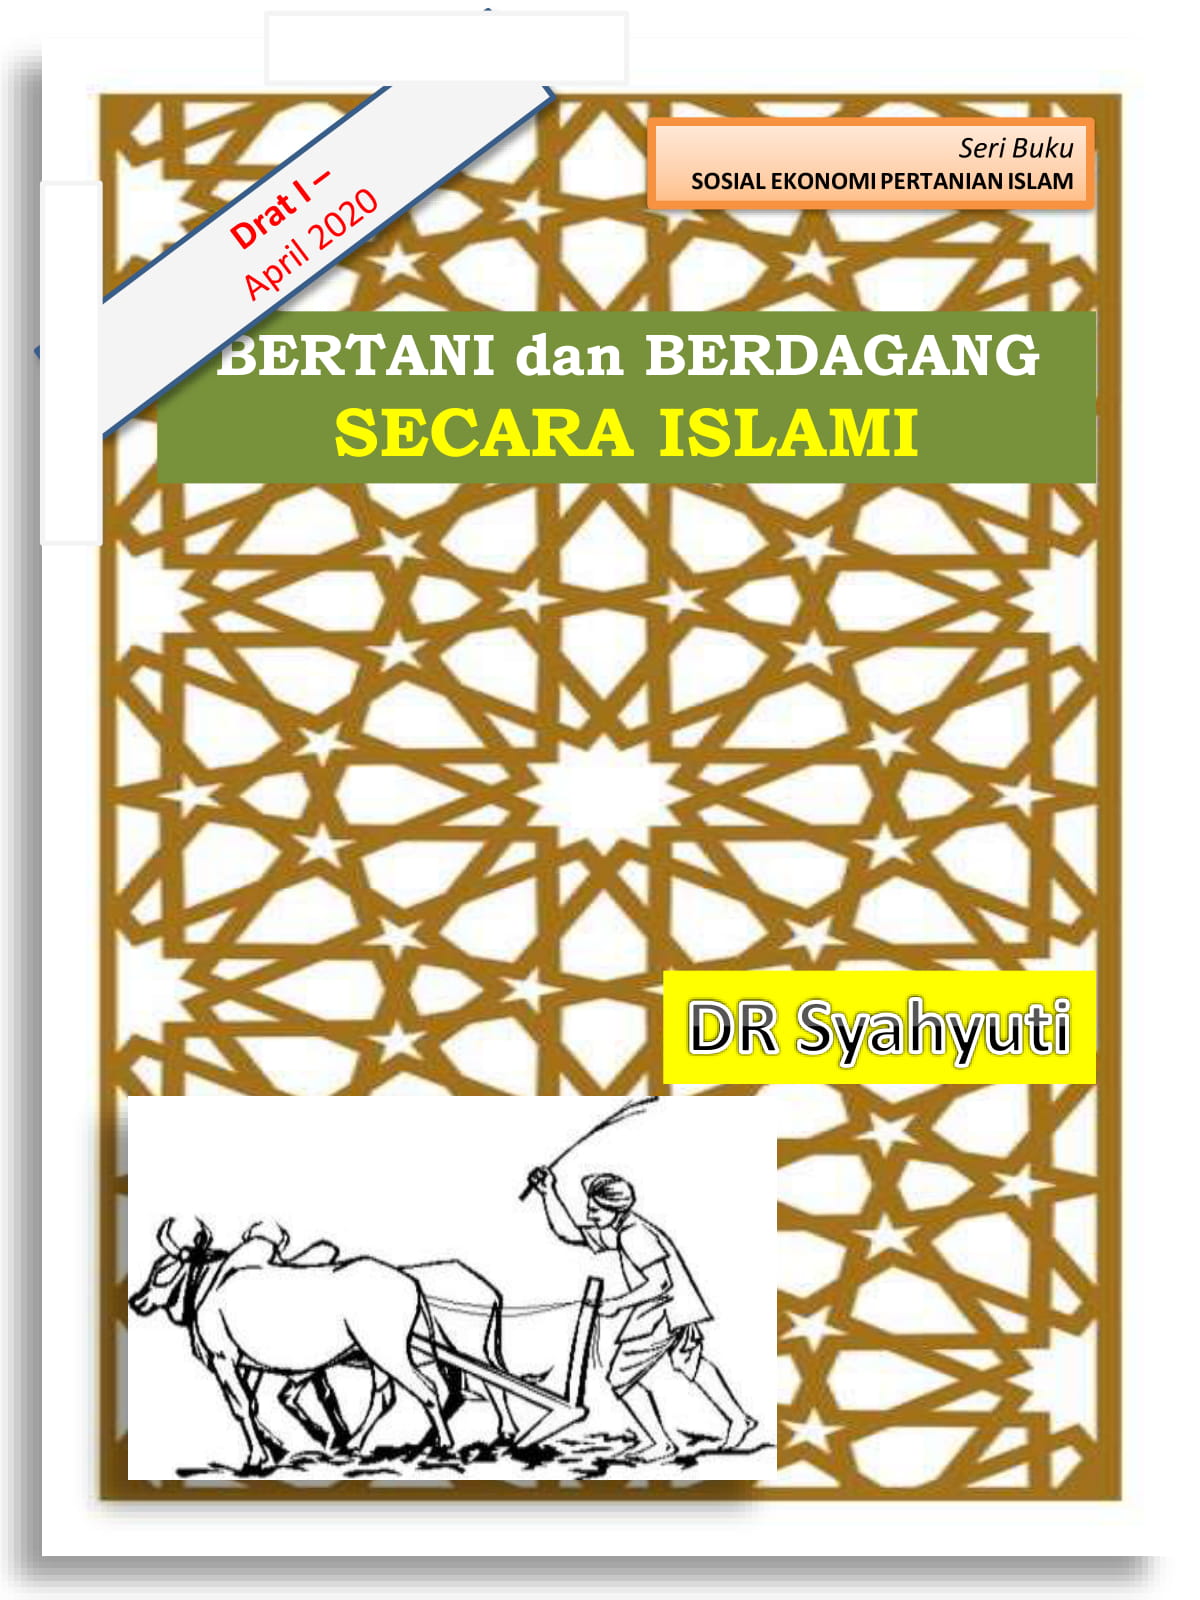 Draft I - buku "Bertani dan Berdagang Secara Islami"